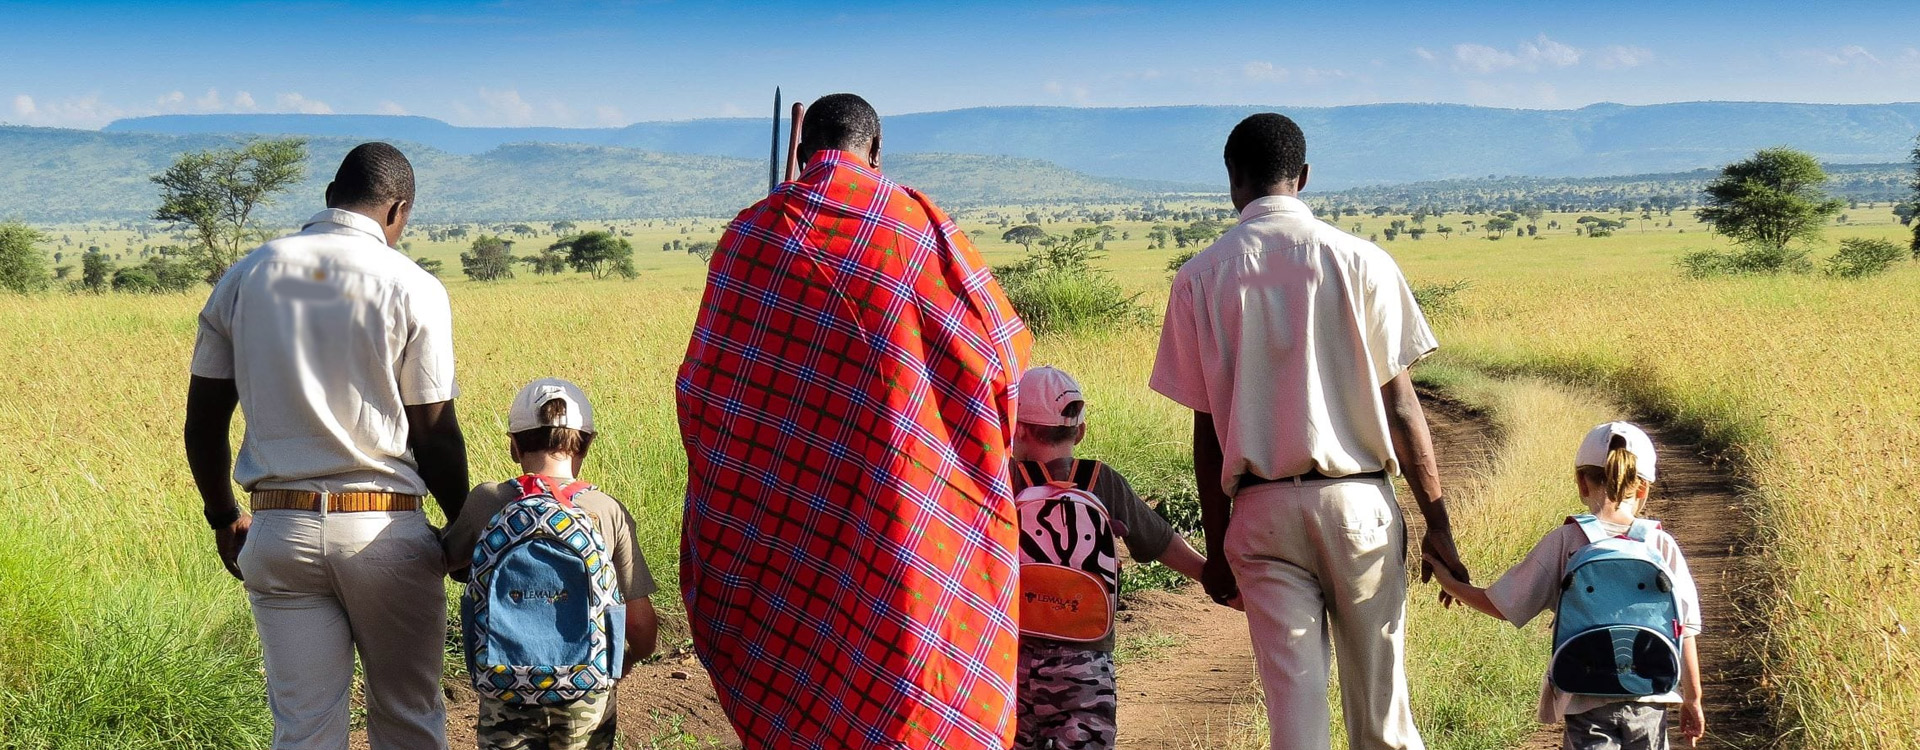 Children in Tanzania Safari